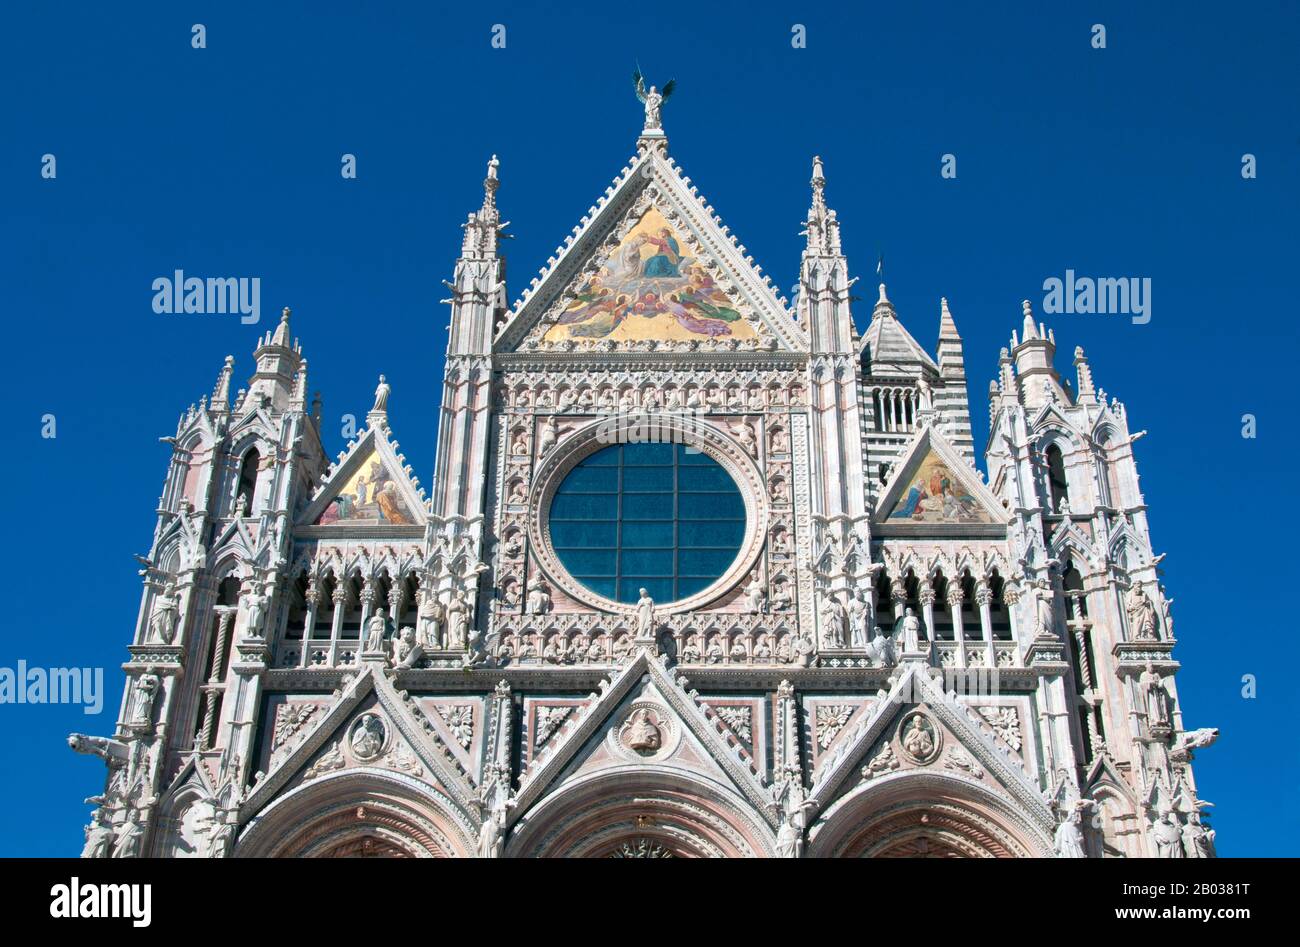 La cathédrale Saint Marie de l'Assomption a été conçue et achevée entre 1215 et 1263 sur le site d'une structure antérieure. Il a la forme d'une croix latine avec un transept légèrement projetant, un dôme et un clocher. Le dôme s'élève d'une base hexagonale avec des colonnes de support. La lanterne au sommet du dôme a été ajoutée par Gian Lorenzo Bernini. La nef est séparée des deux allées par des arches semi-circulaires. L'extérieur et l'intérieur sont construits en marbre blanc et noir verdâtre en rayures alternées, avec un supplément de marbre rouge sur la façade. Banque D'Images